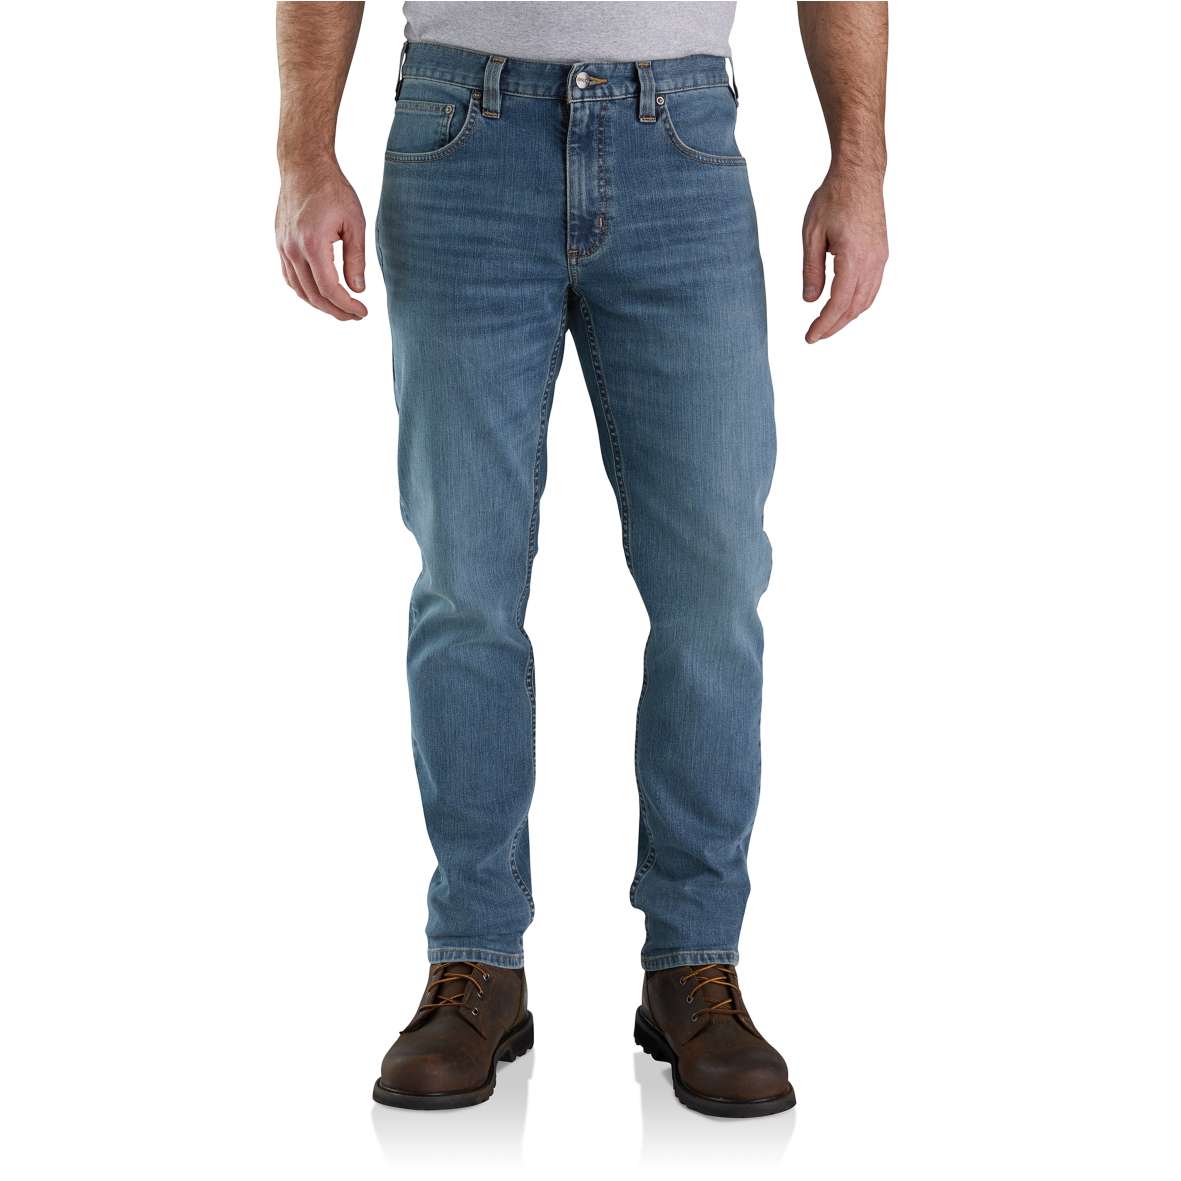 ג'ינס ®RUGGED FLEX מחודד ונמוך